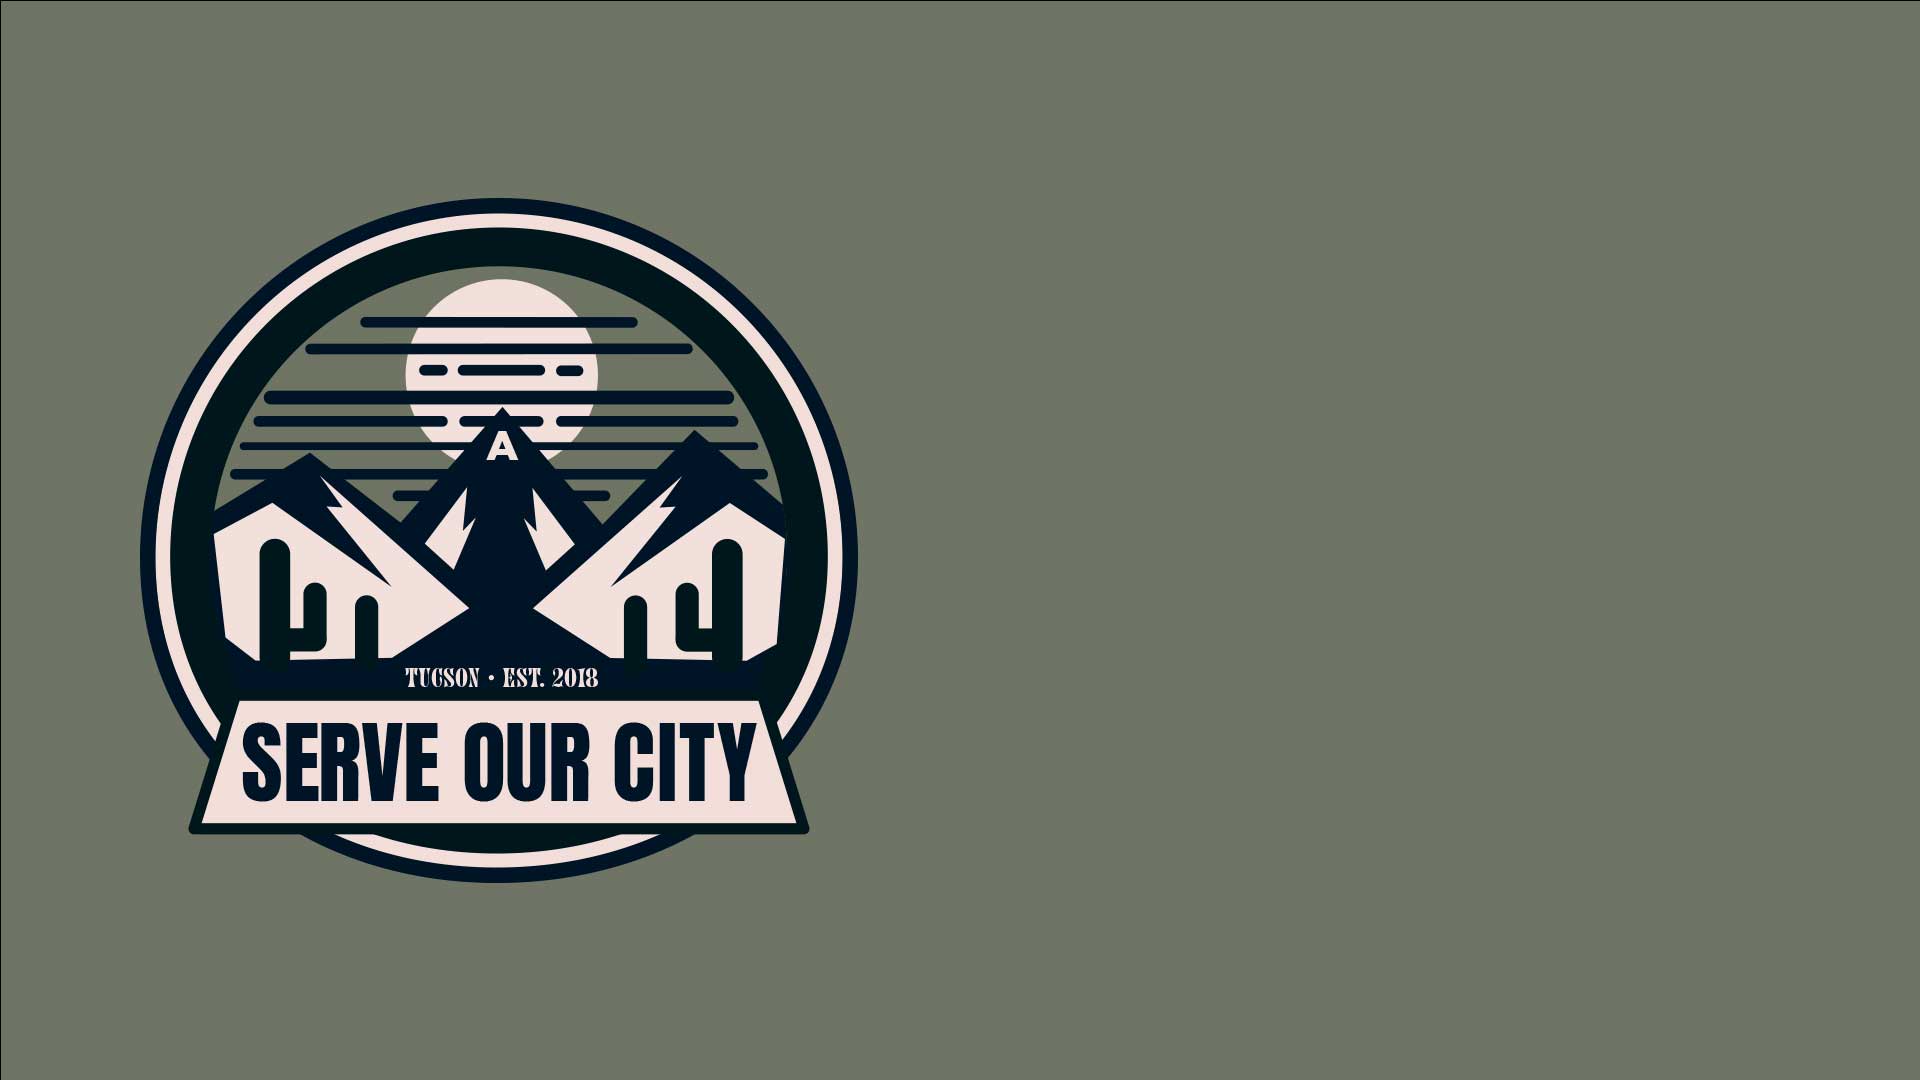 Image: Serve Our City